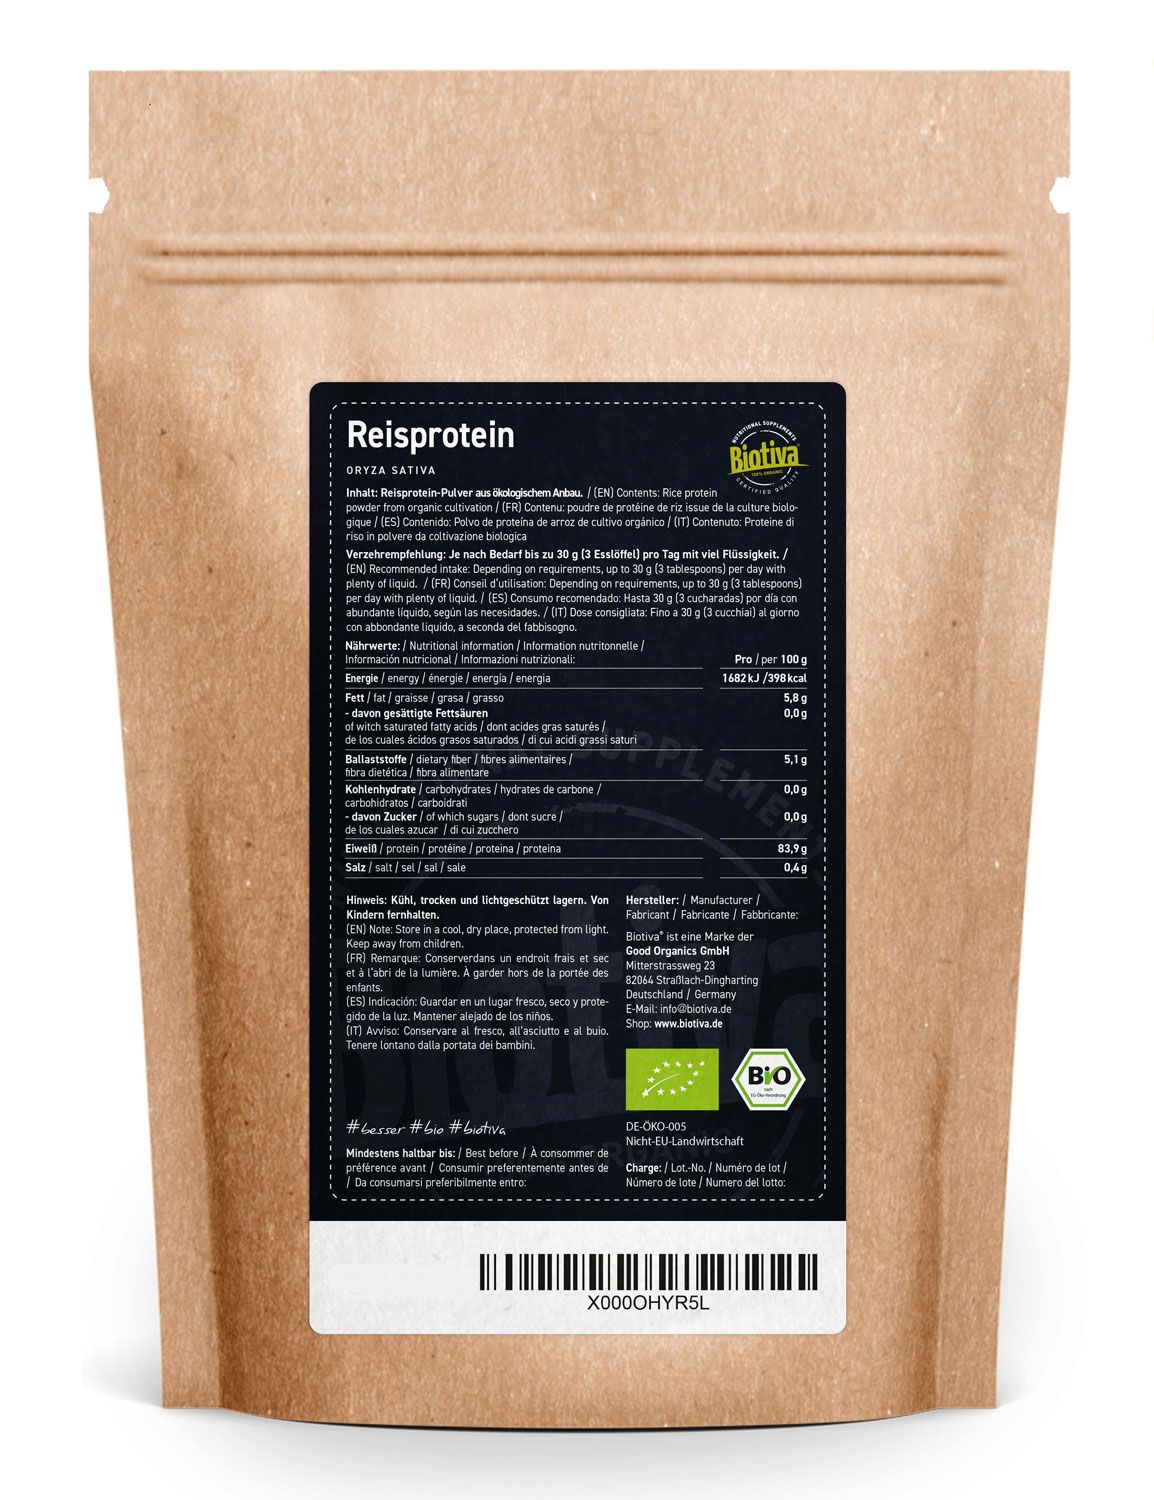 Biotiva Reisprotein Pulver Bio